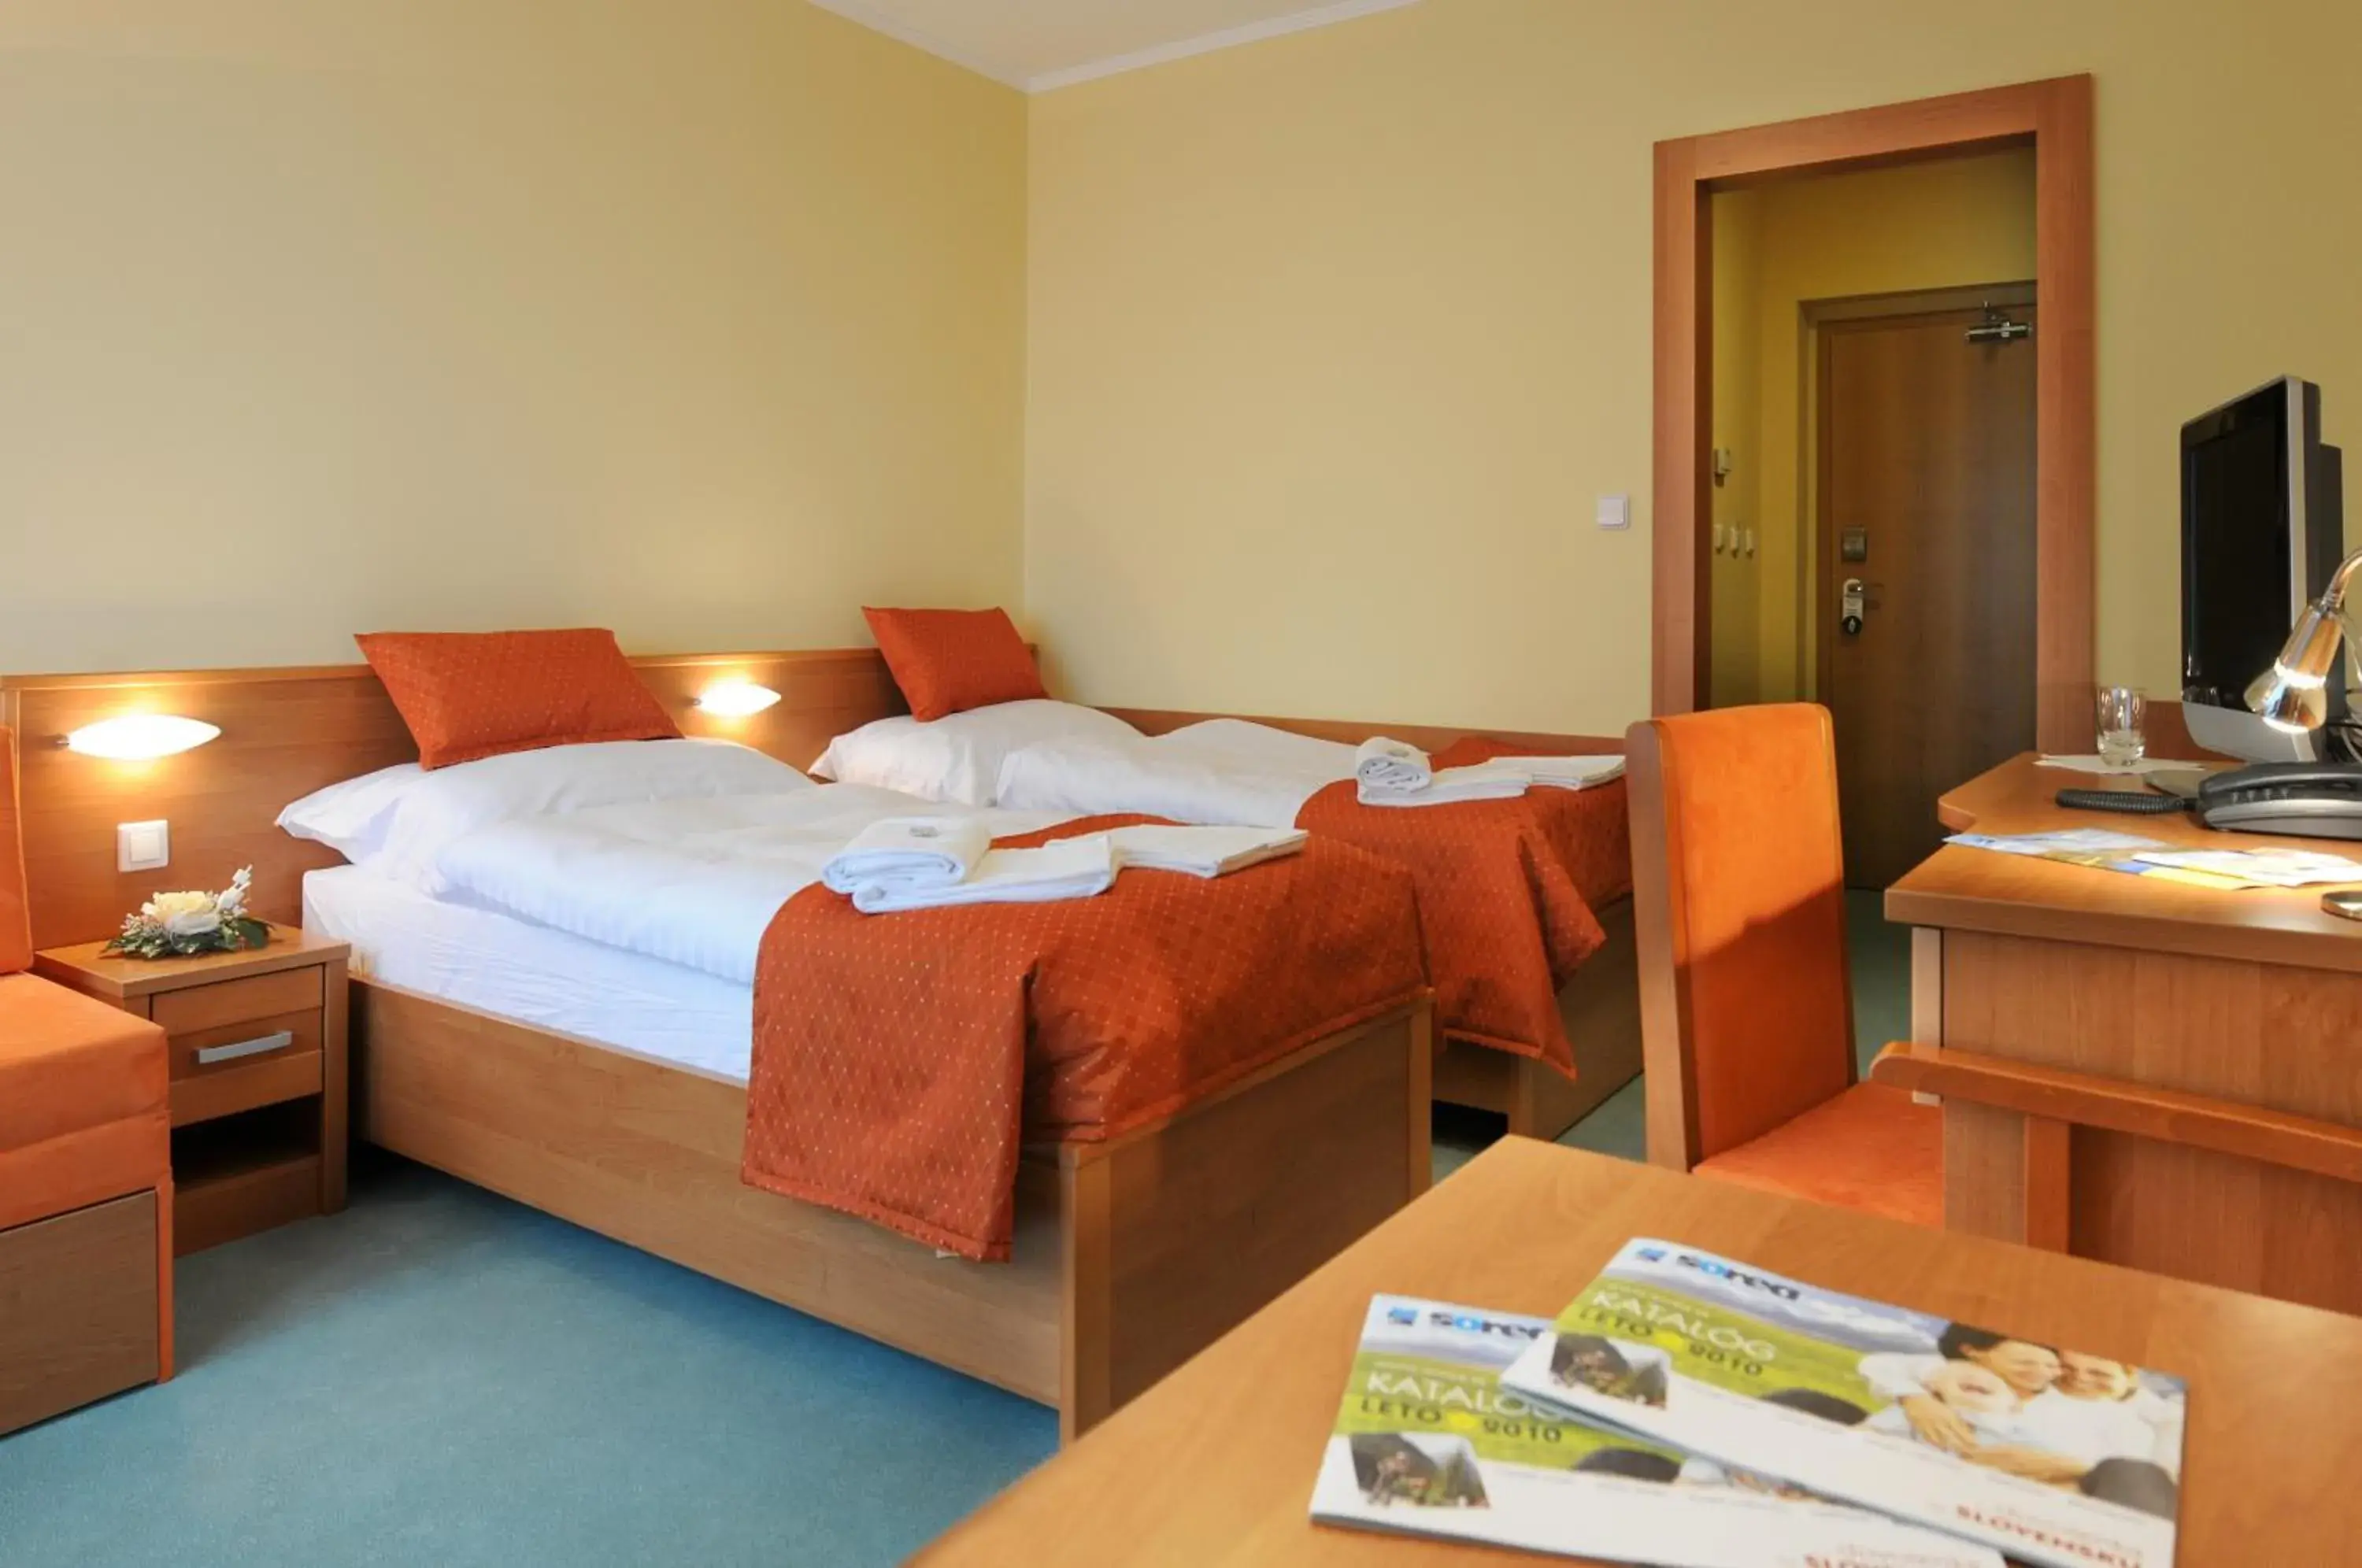 Standard Double Room - single occupancy in Hotel Sorea Regia